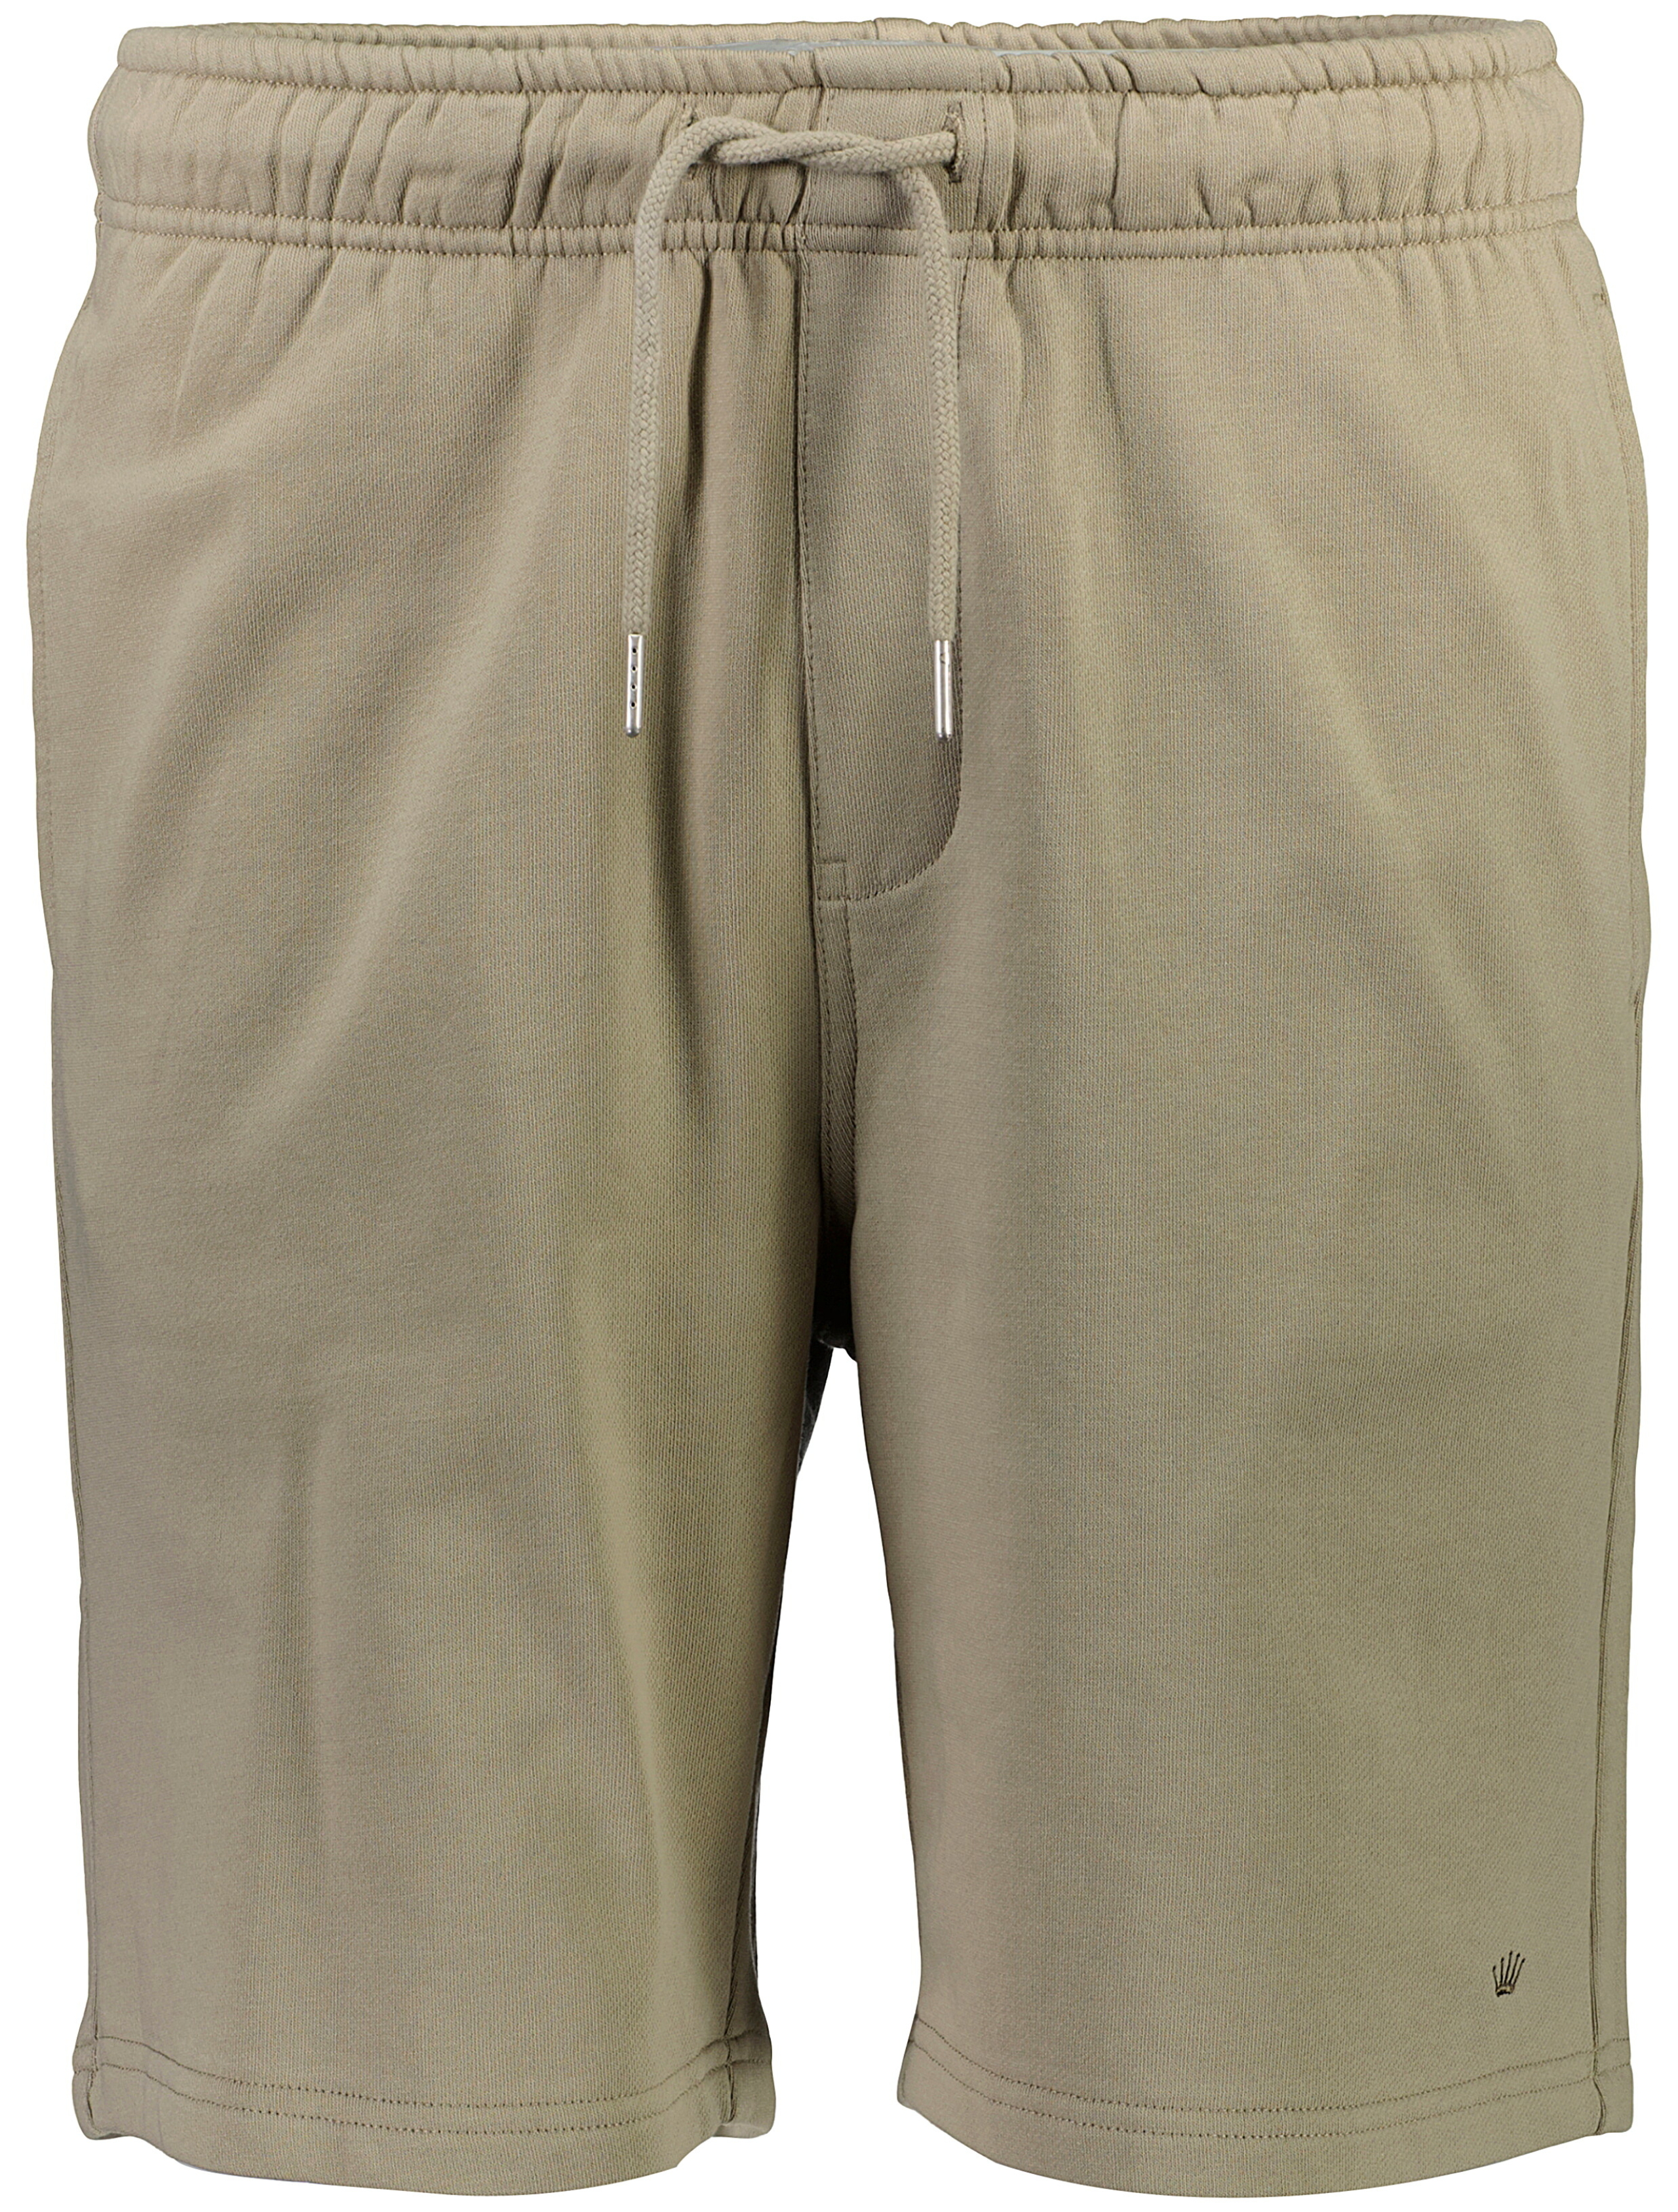 Junk de Luxe Casual shorts grå / oak grey